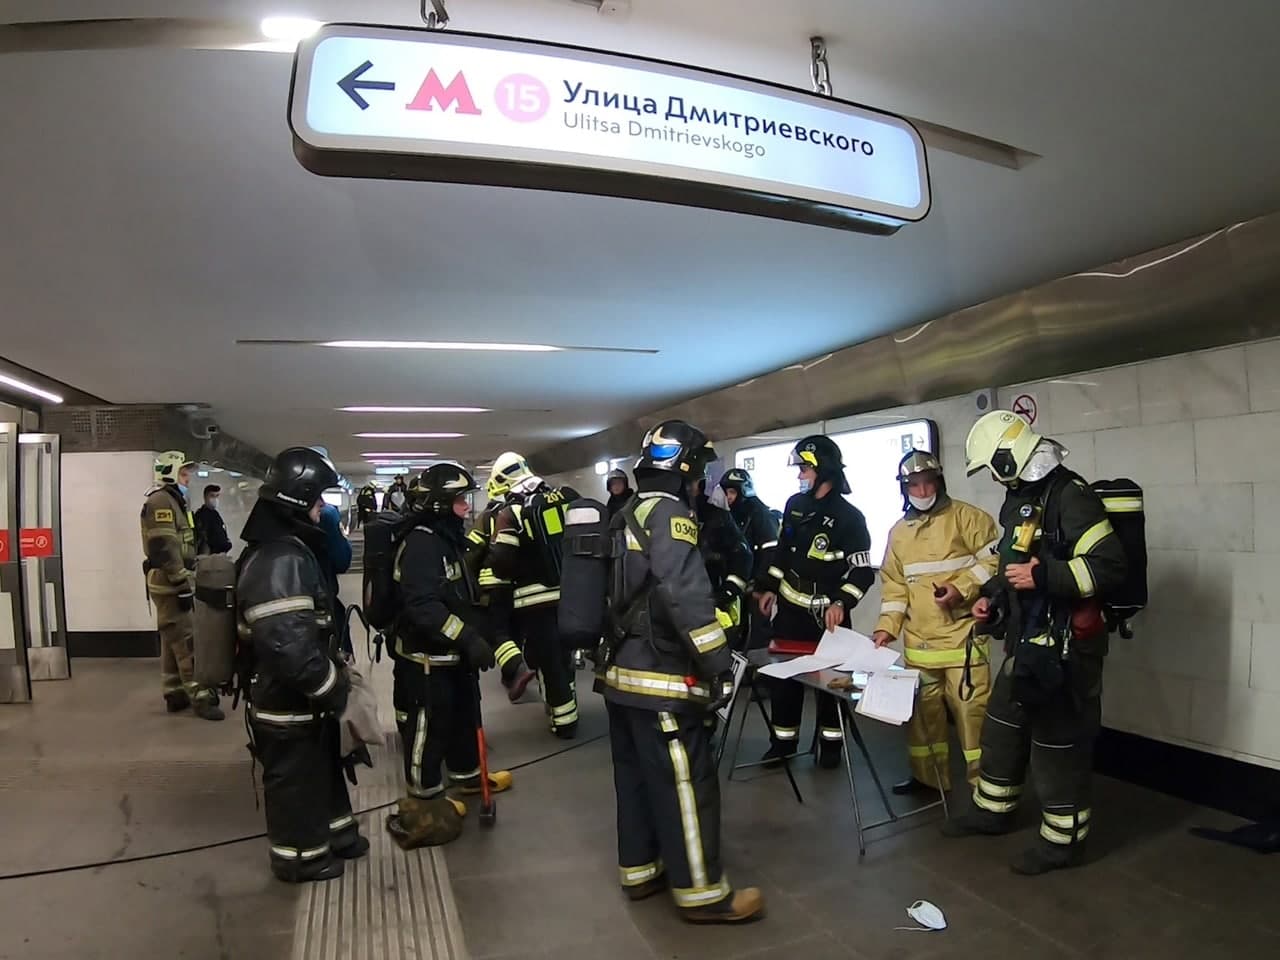 Пожарно-тактические учения провели на станции метро «Улица Дмитриевского»